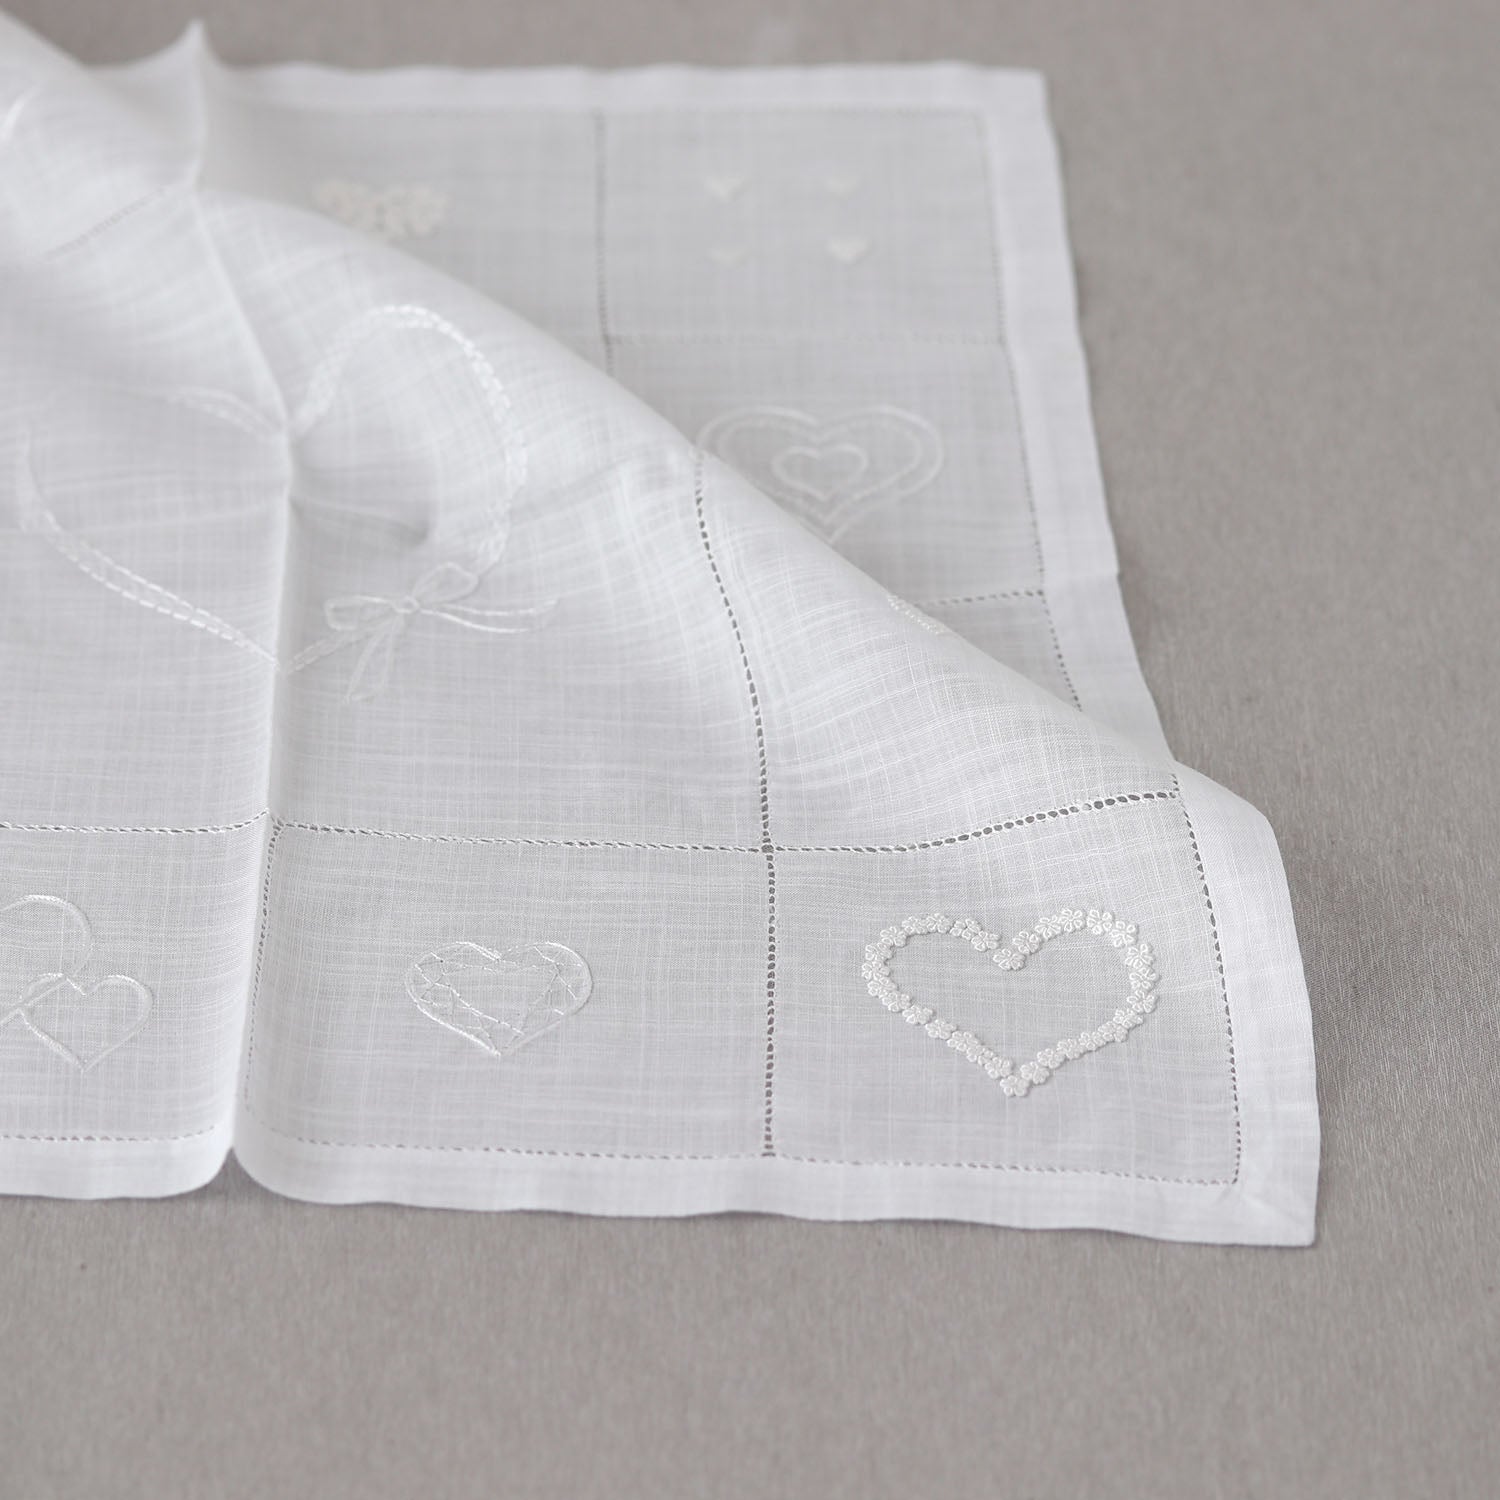 Vietnamese hand embroidery many hearts [Bridal handkerchief].